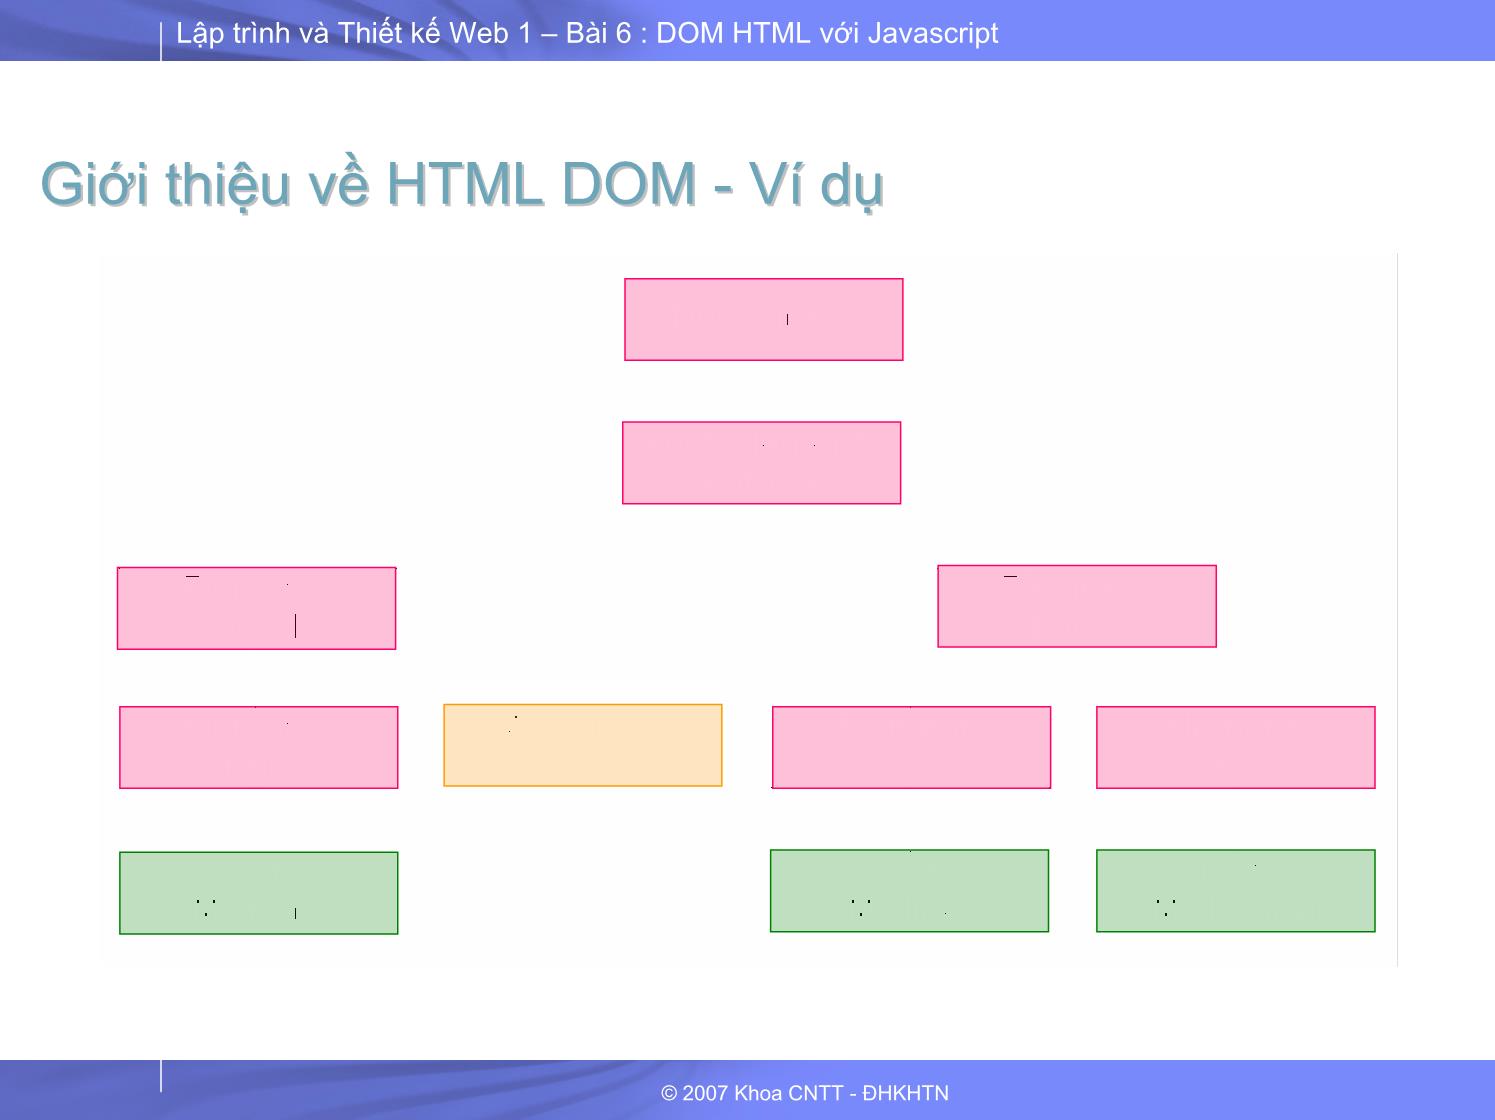 Lập trình và thiết kế Web 1 - Bài 6 - Phần 2/2: HTML DOM với JavaScript trang 5